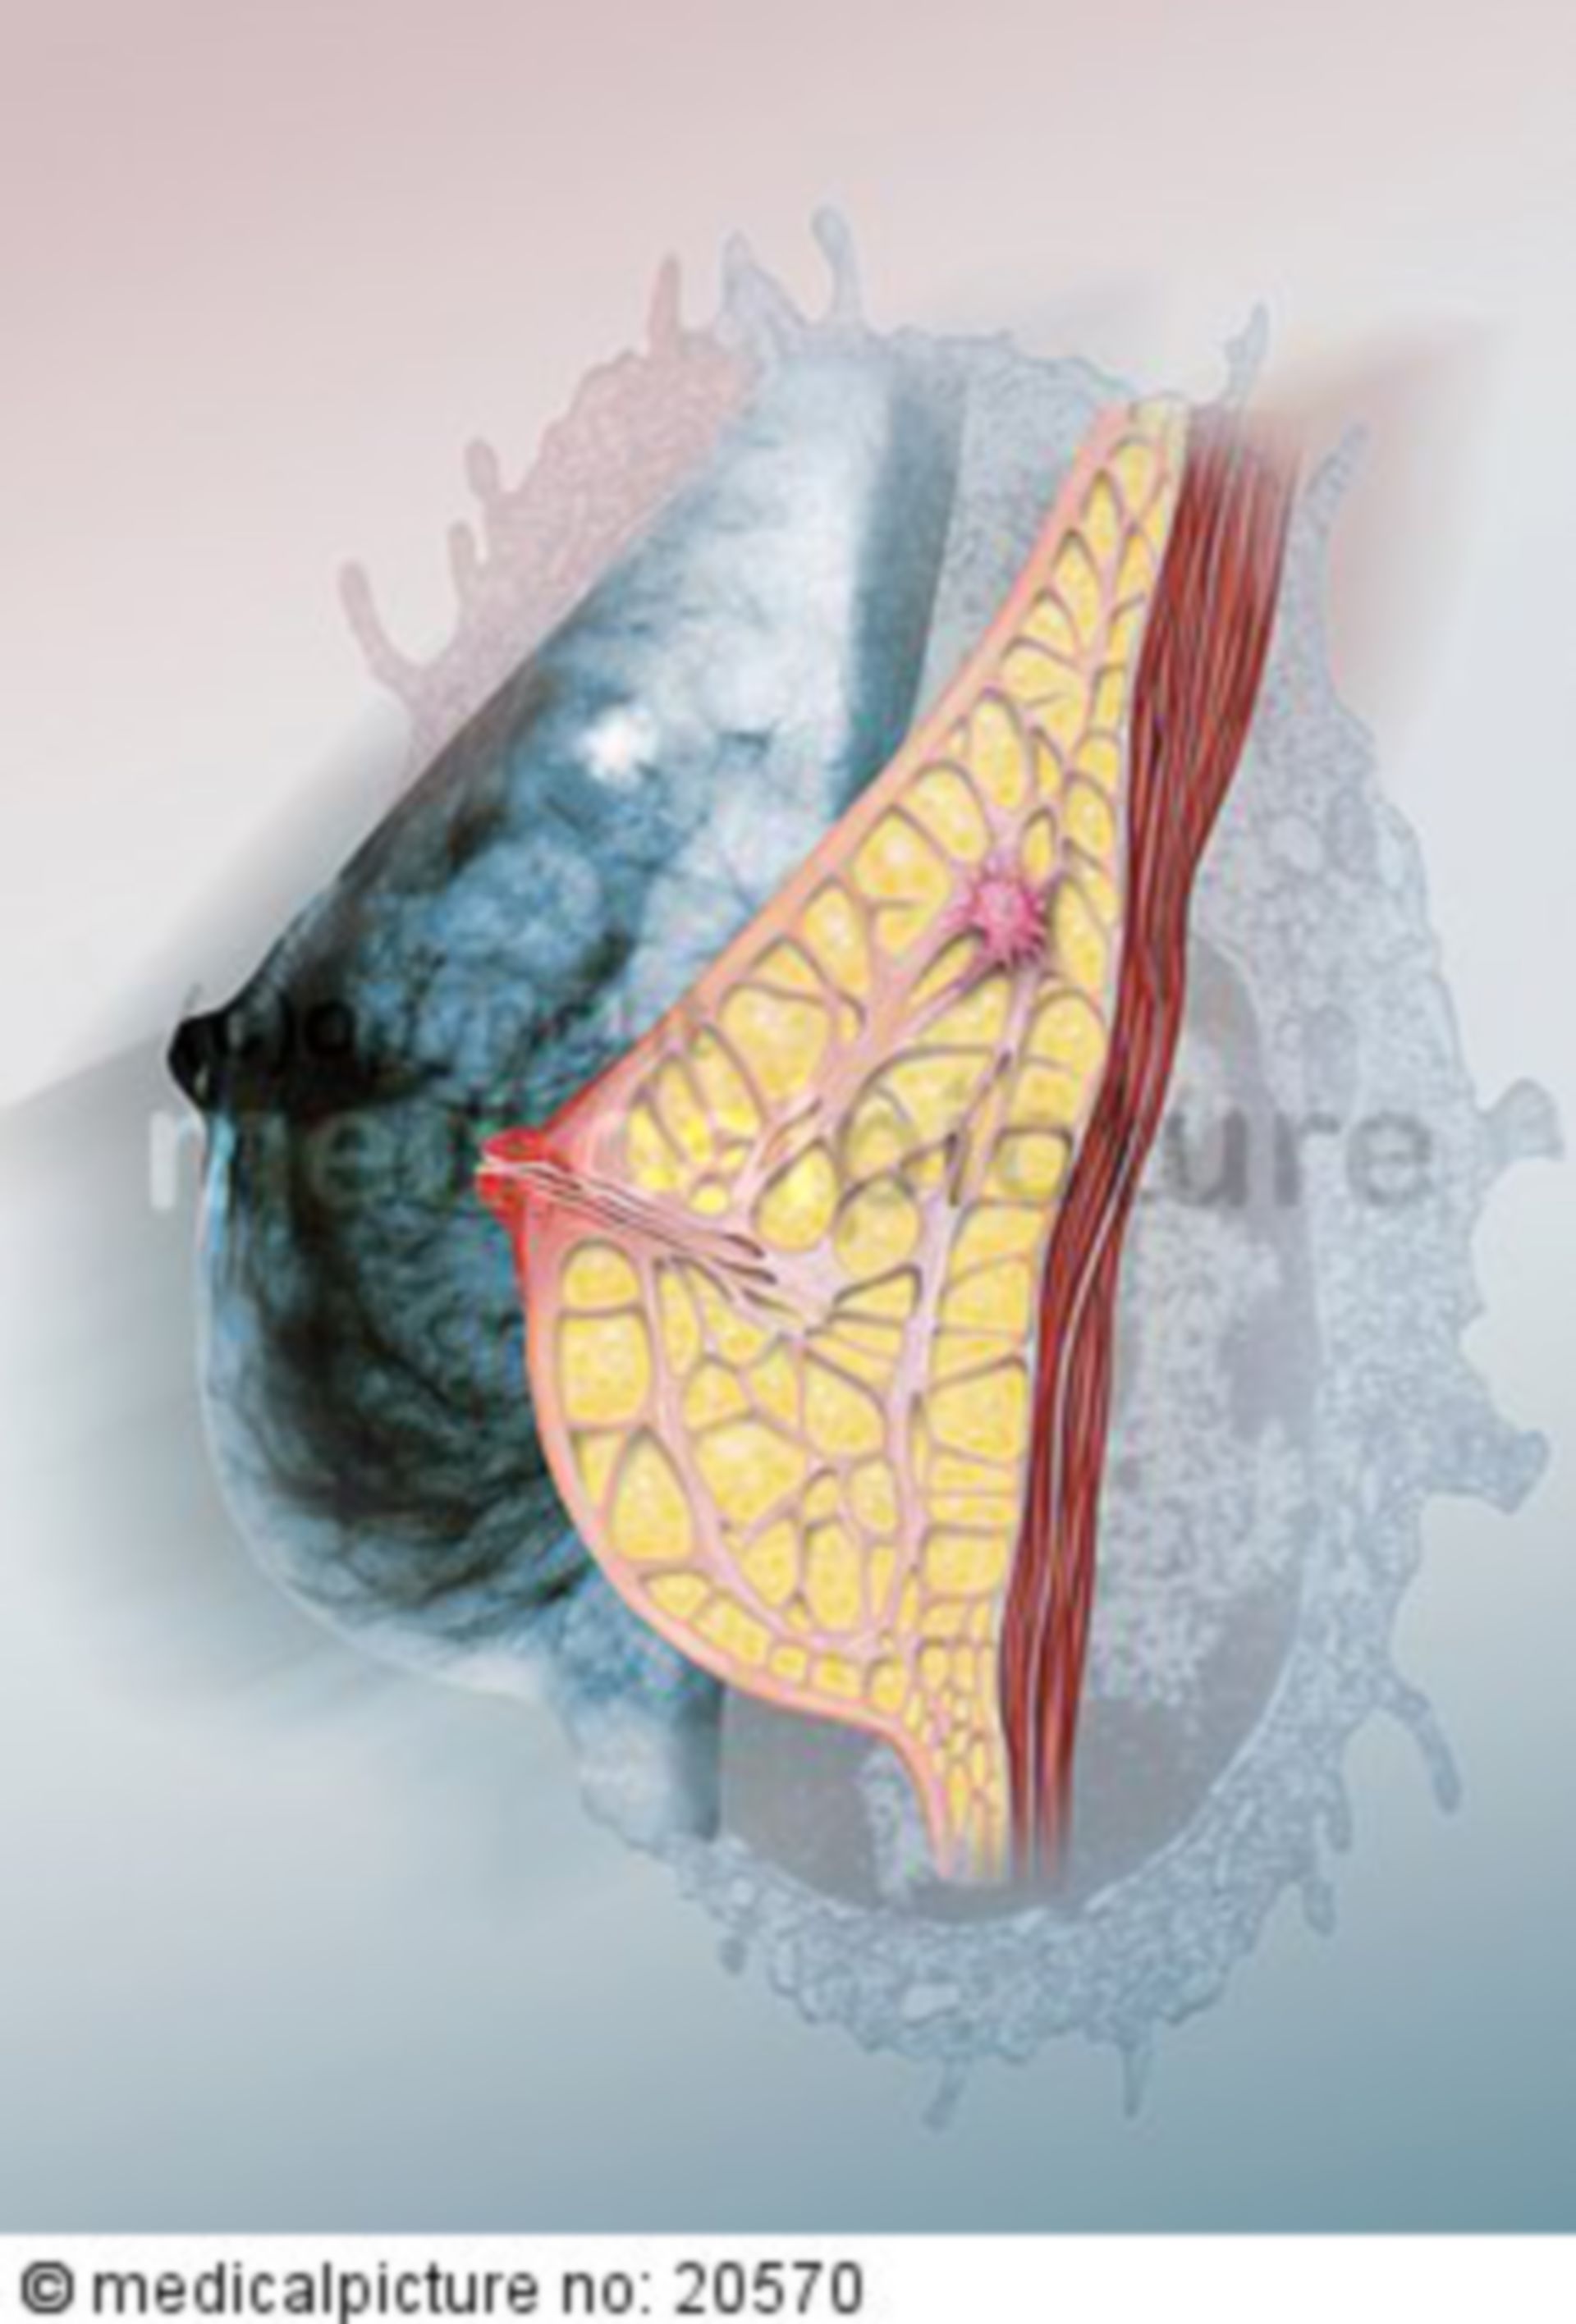 Female breast (Illustration, Anatomy) - DocCheck